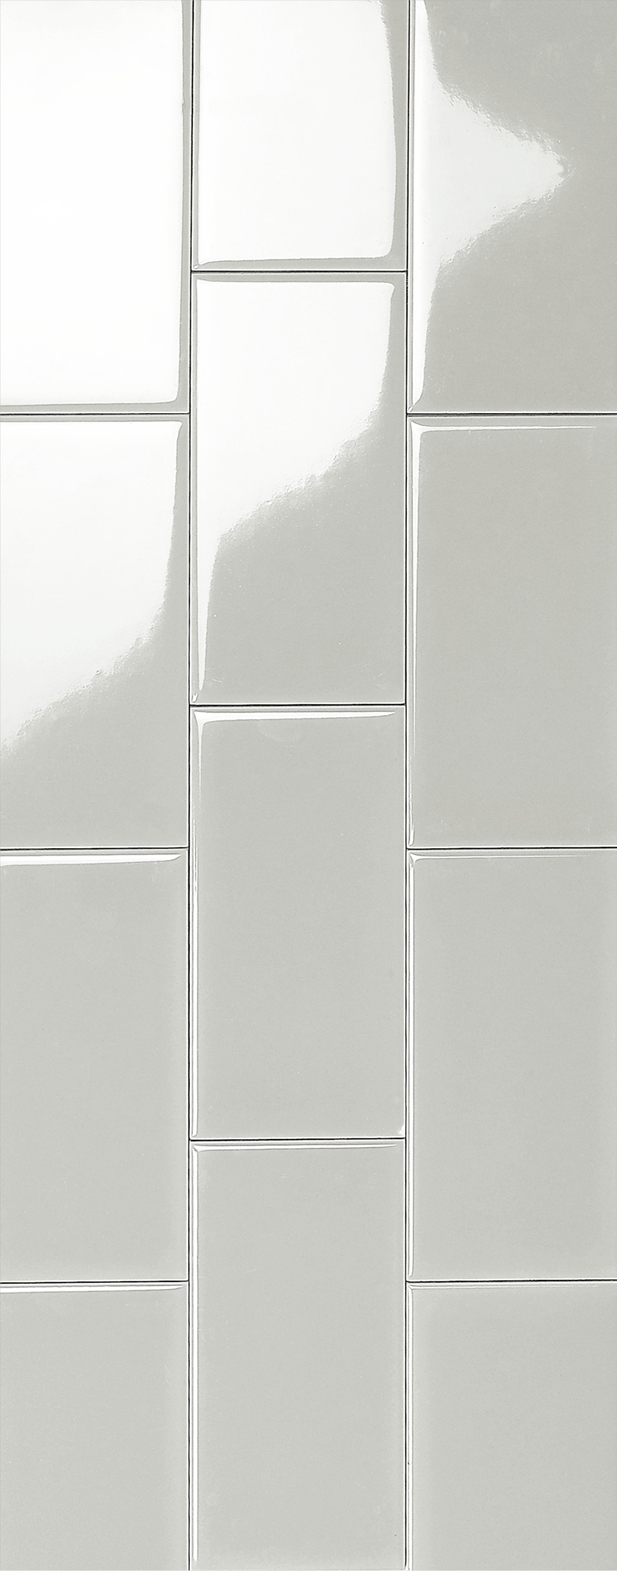 CBM ceramic wall tile bulk production for new house-1